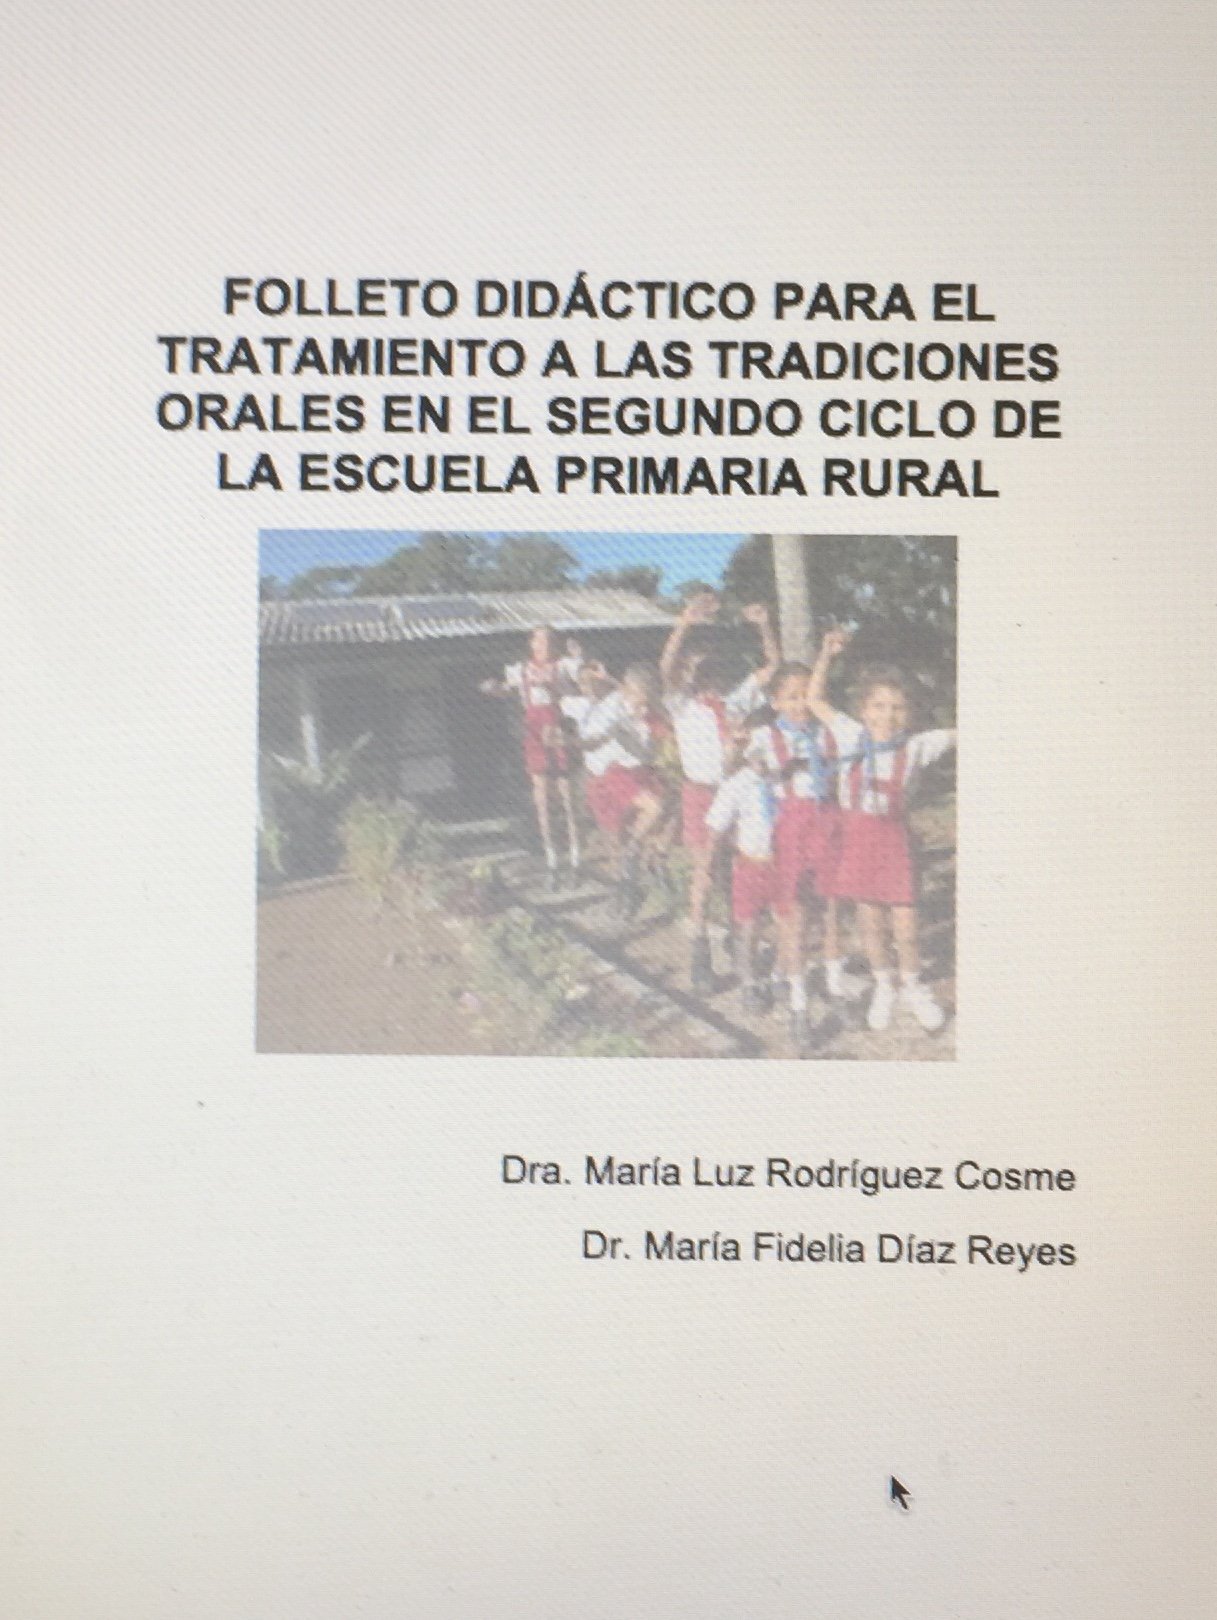 Folleto didáctico para el tratamiento de las tradiciones orales en el segundo ciclo de la escuela primaria rural